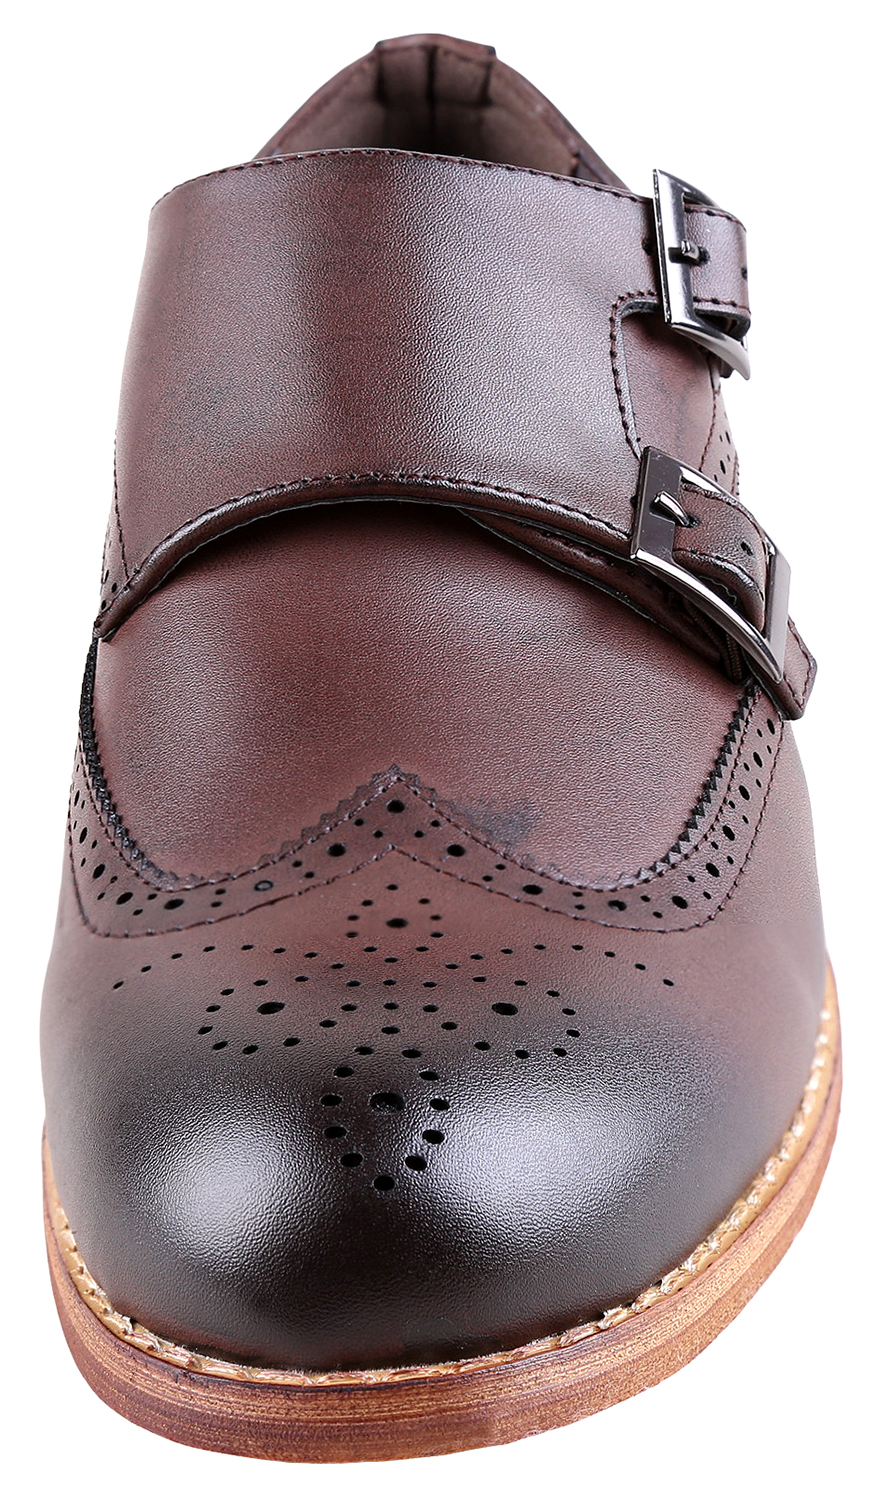 Urban Fox Allen Men's Dress Shoe | Double Monk Strap | Brogue | Wingtip Shoes for Men | Dark Brown 11 M US - image 3 of 7